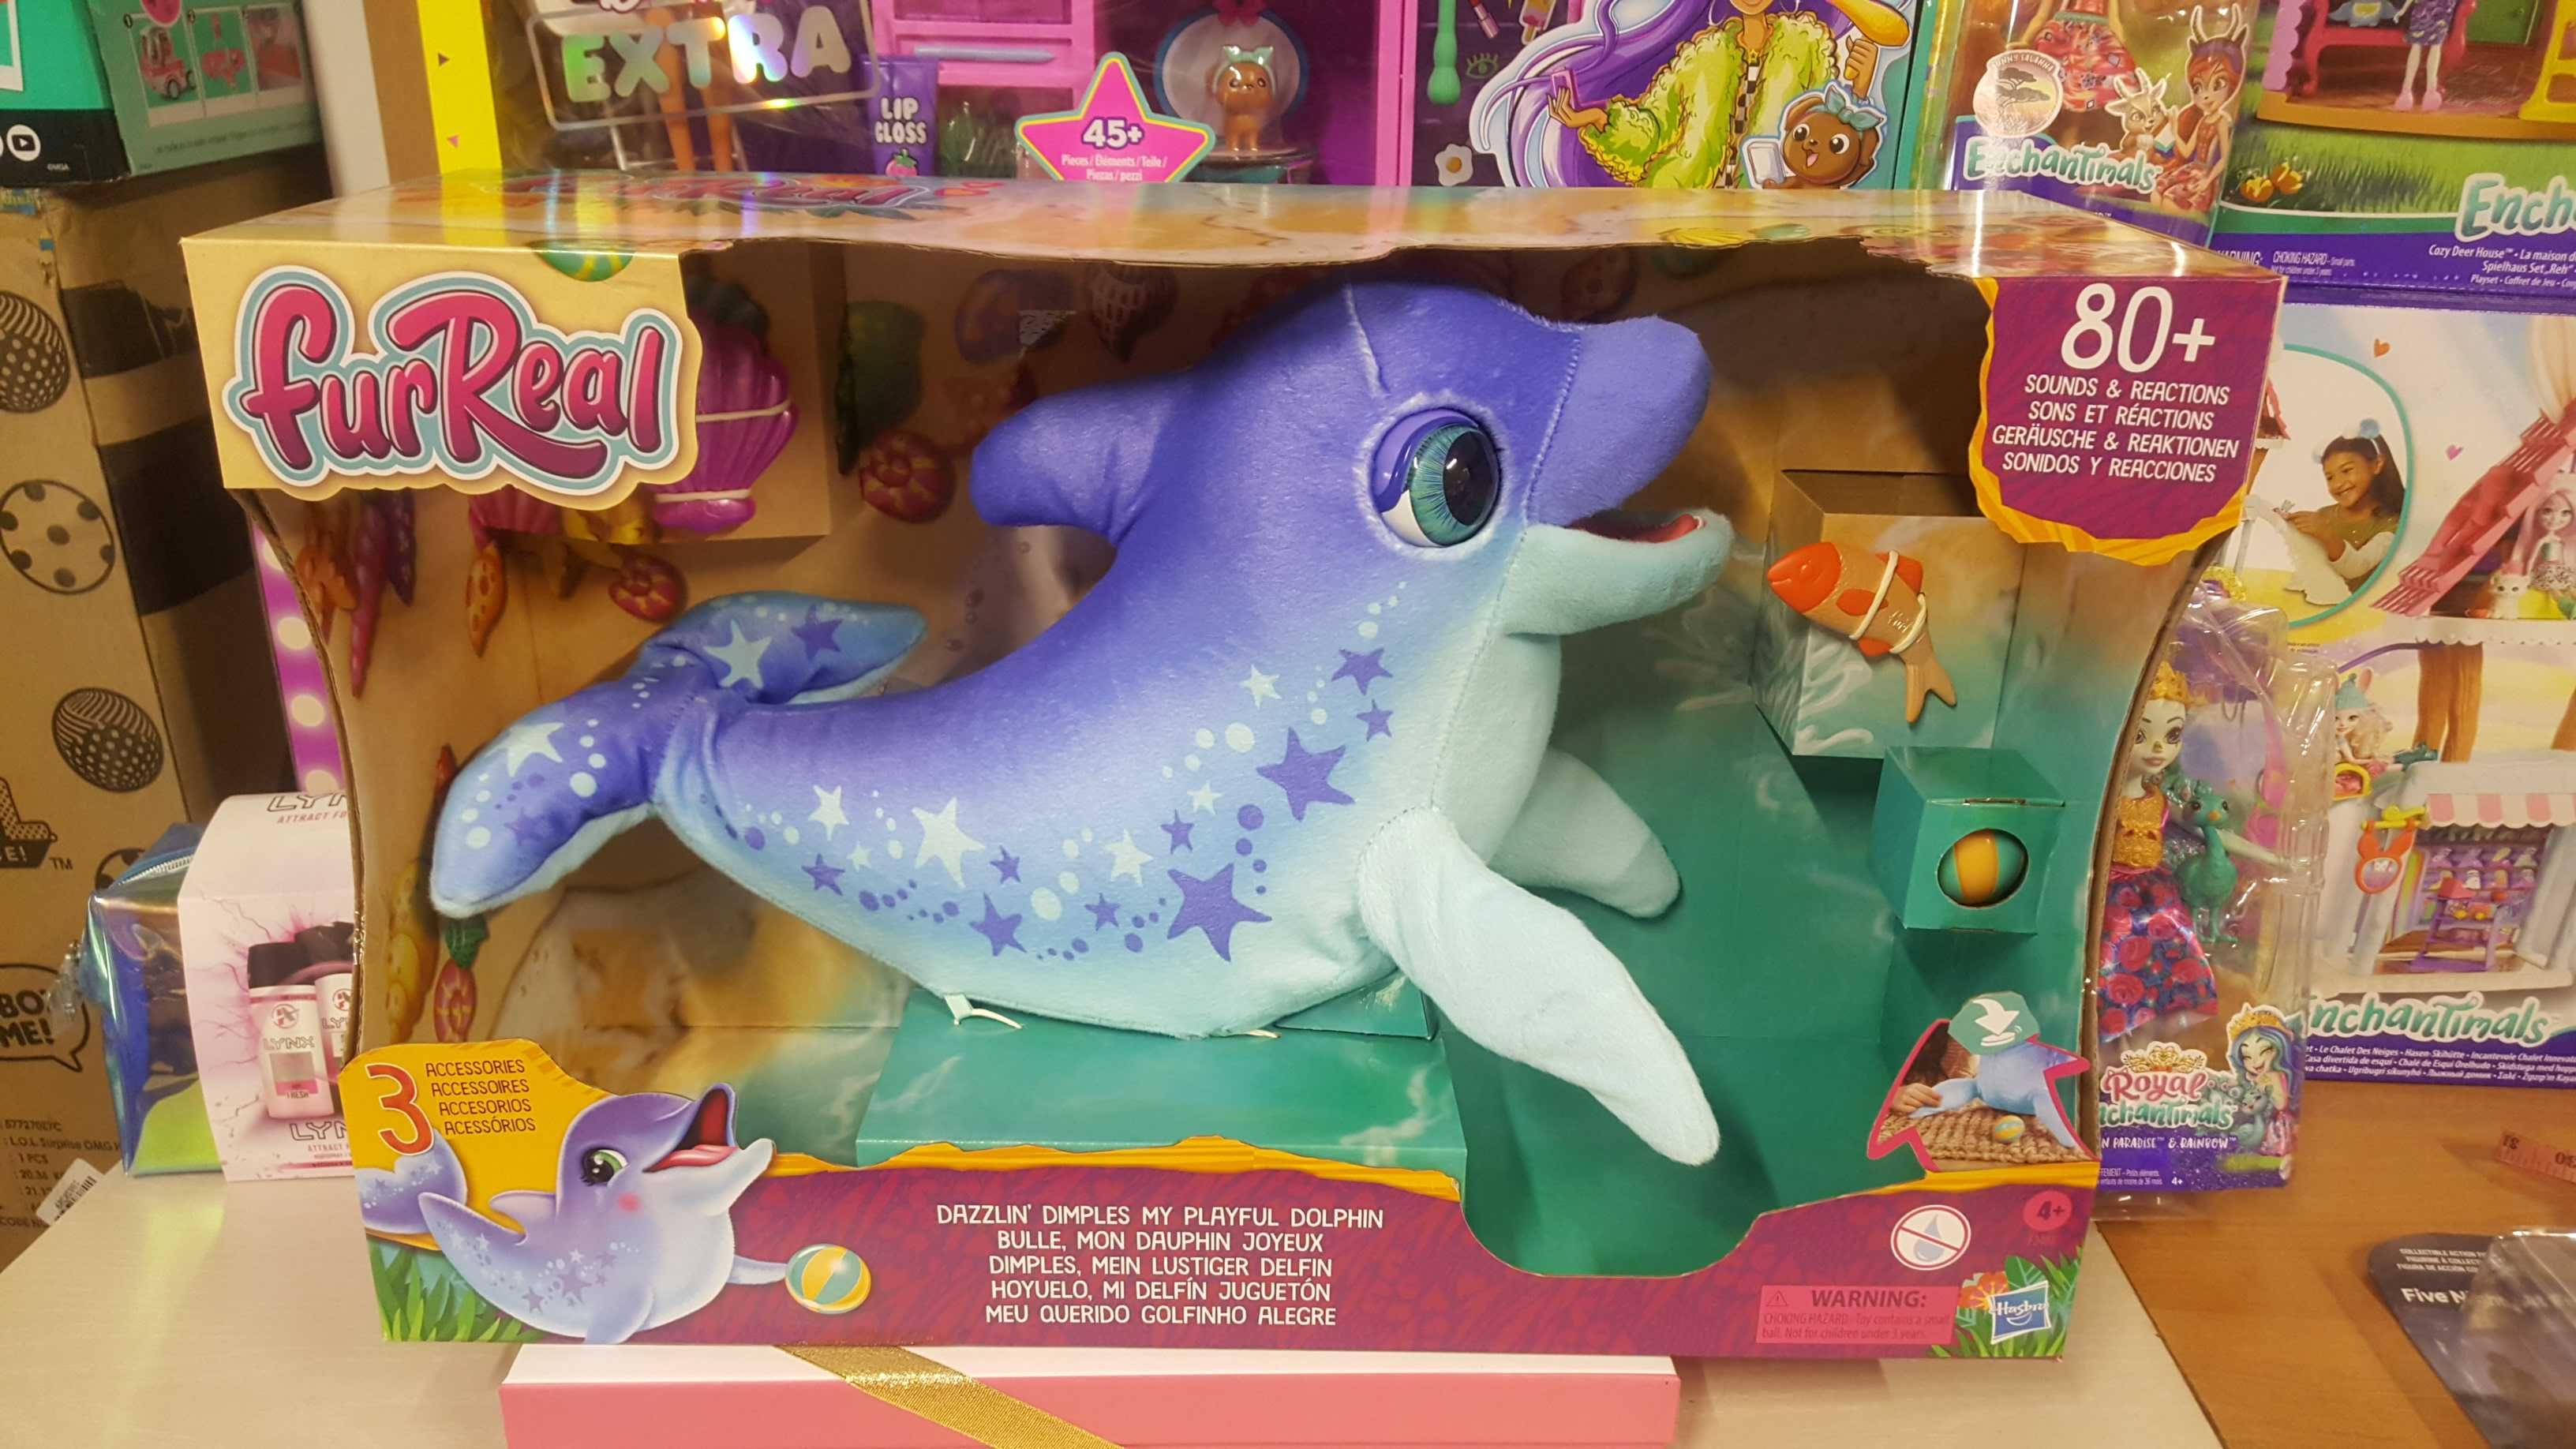 Дельфин интерактивная игрушка, Hasbro Оригинал из США